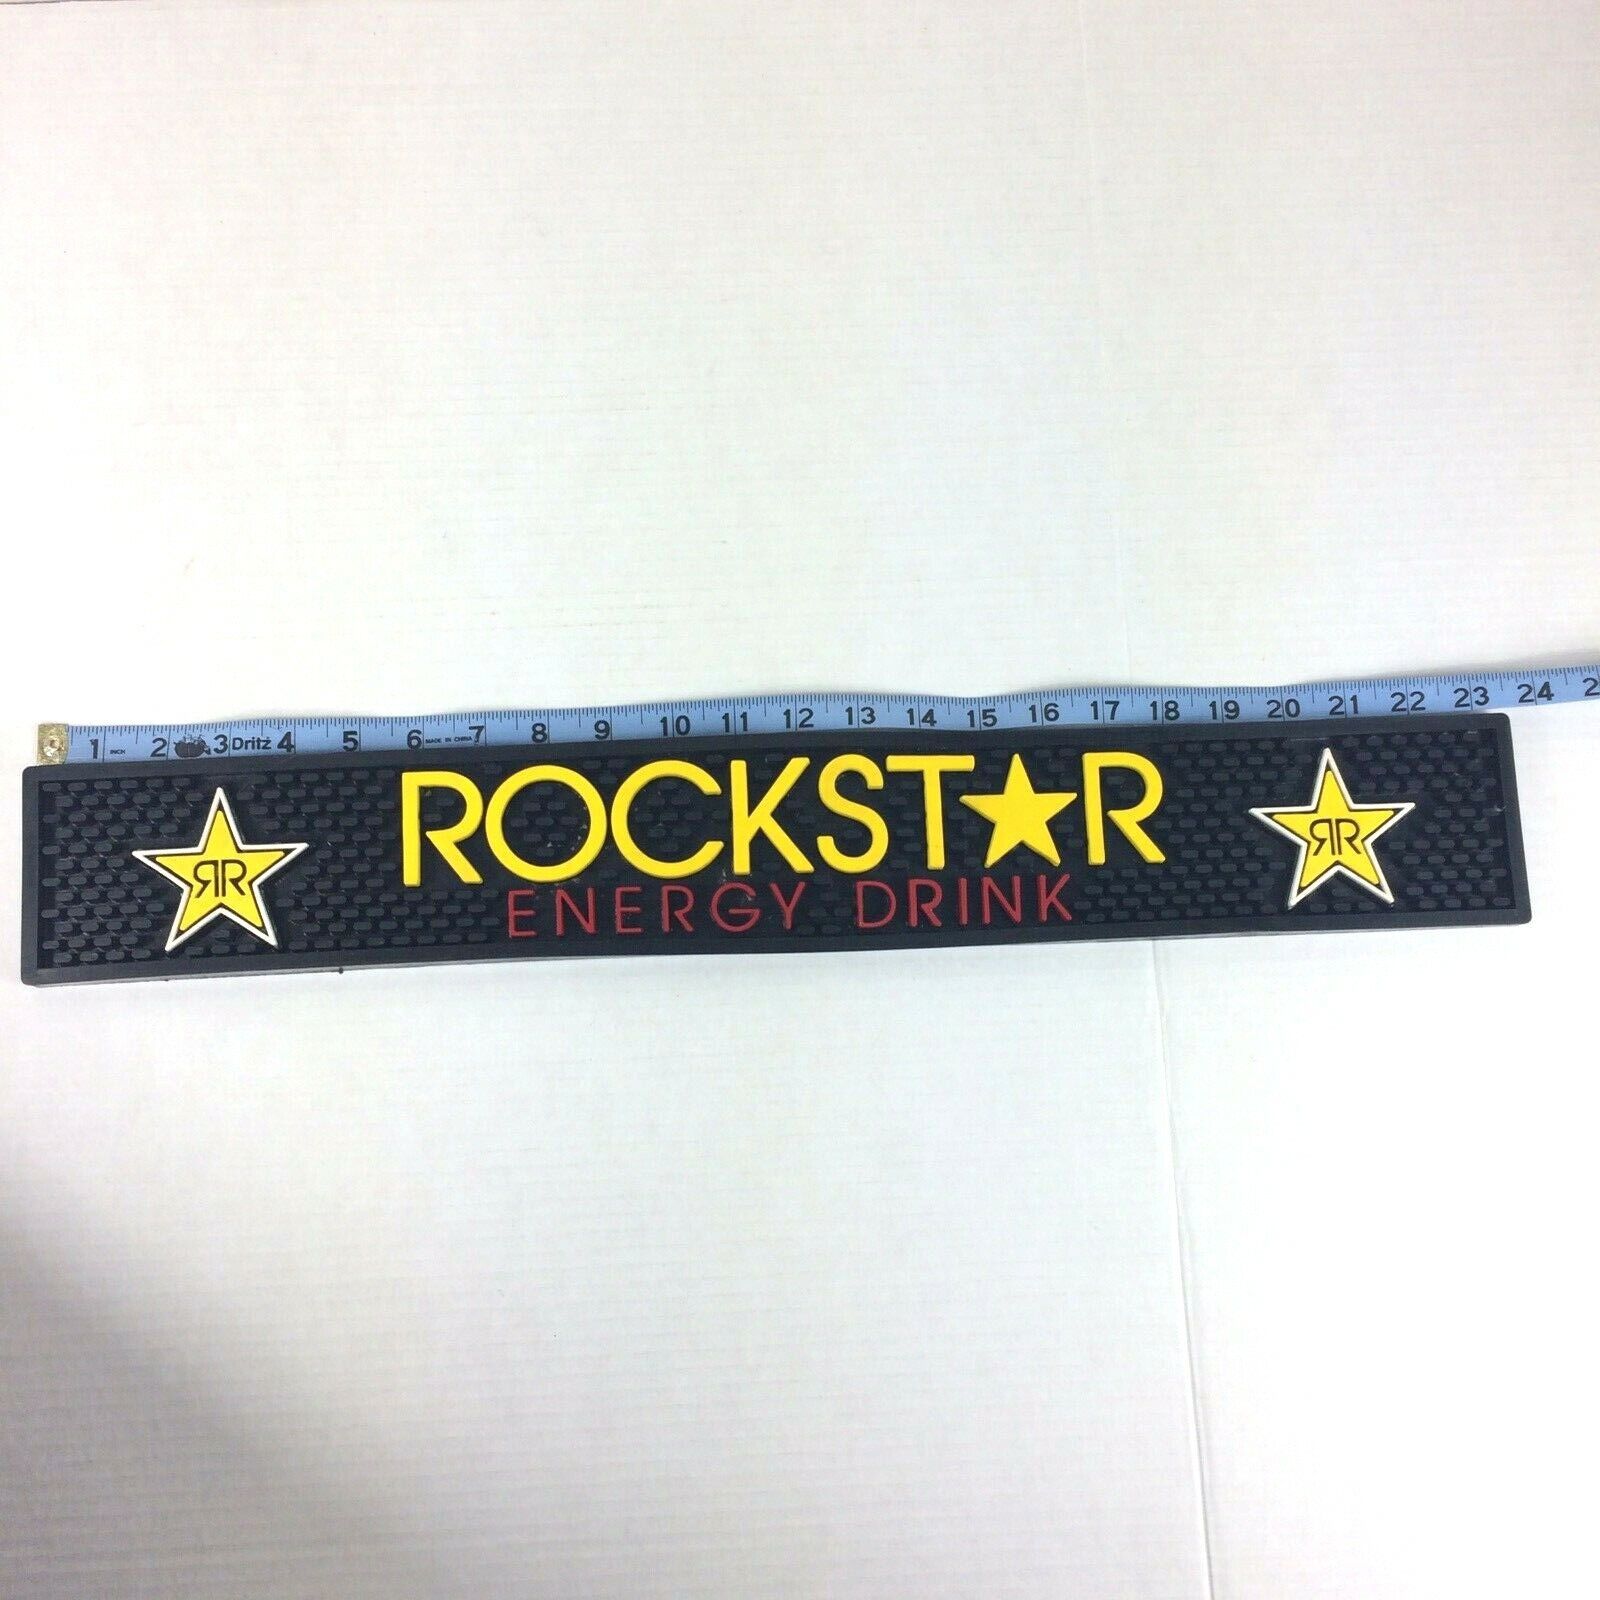 Rockstar Energy Drink Rubber Bar Drip Mat - Approx. 23-1/2” X 3-1/2”